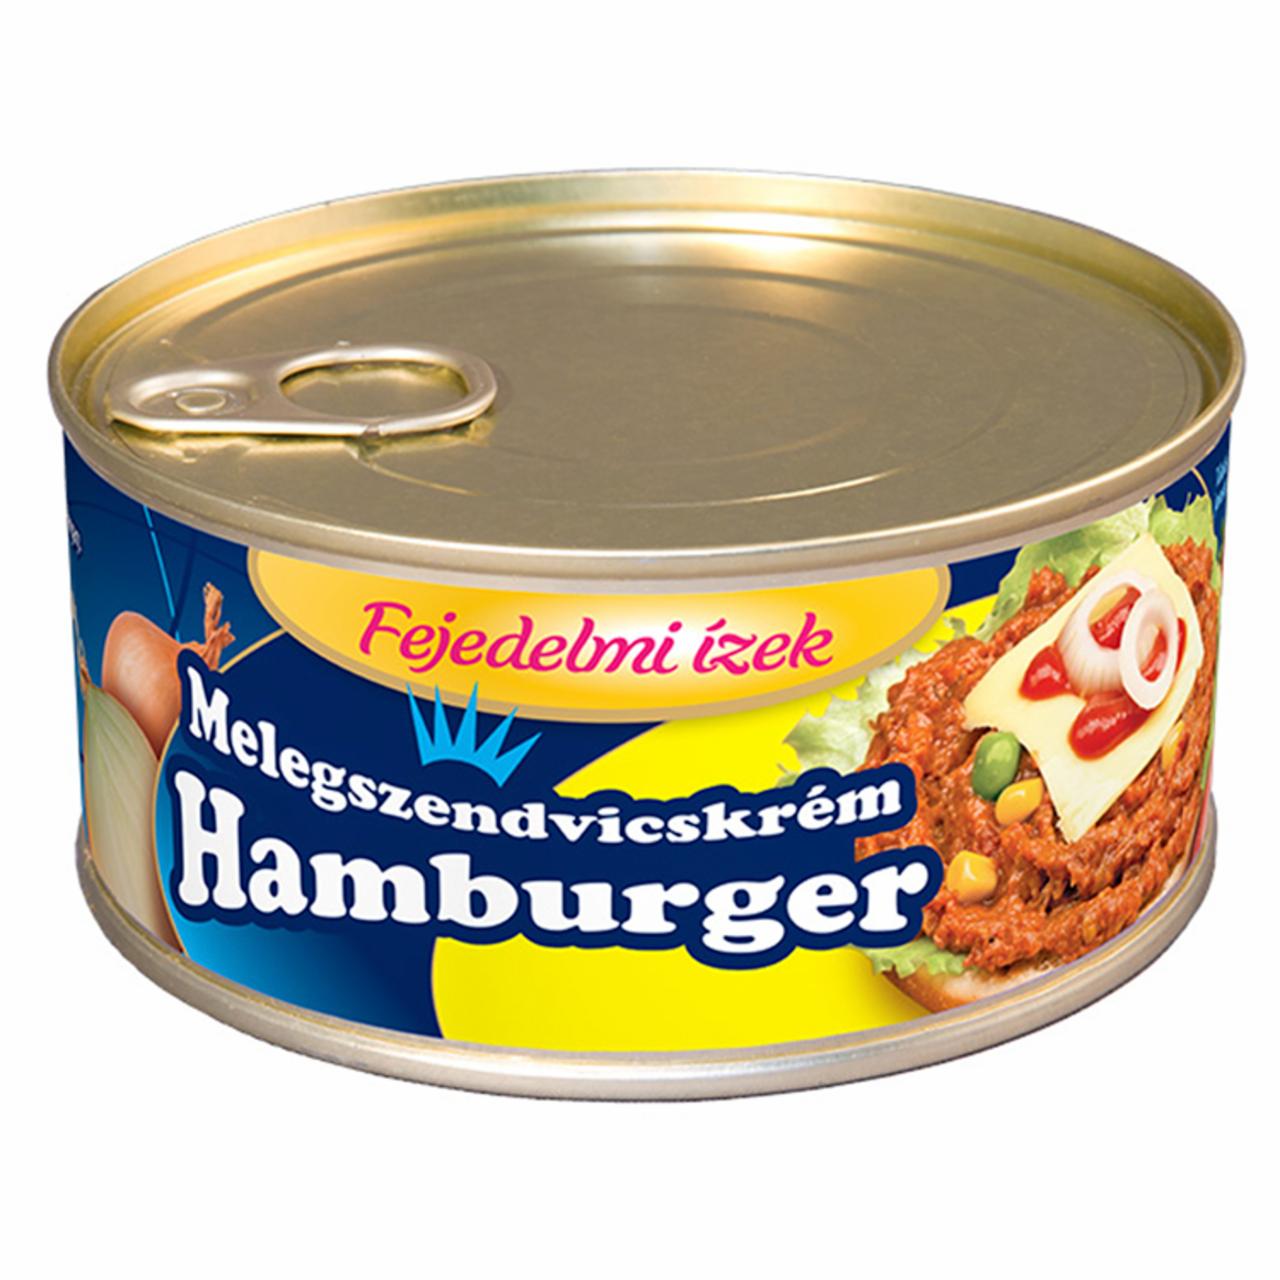 Képek - Fejedelmi Ízek hamburger melegszendvicskrém 300 g